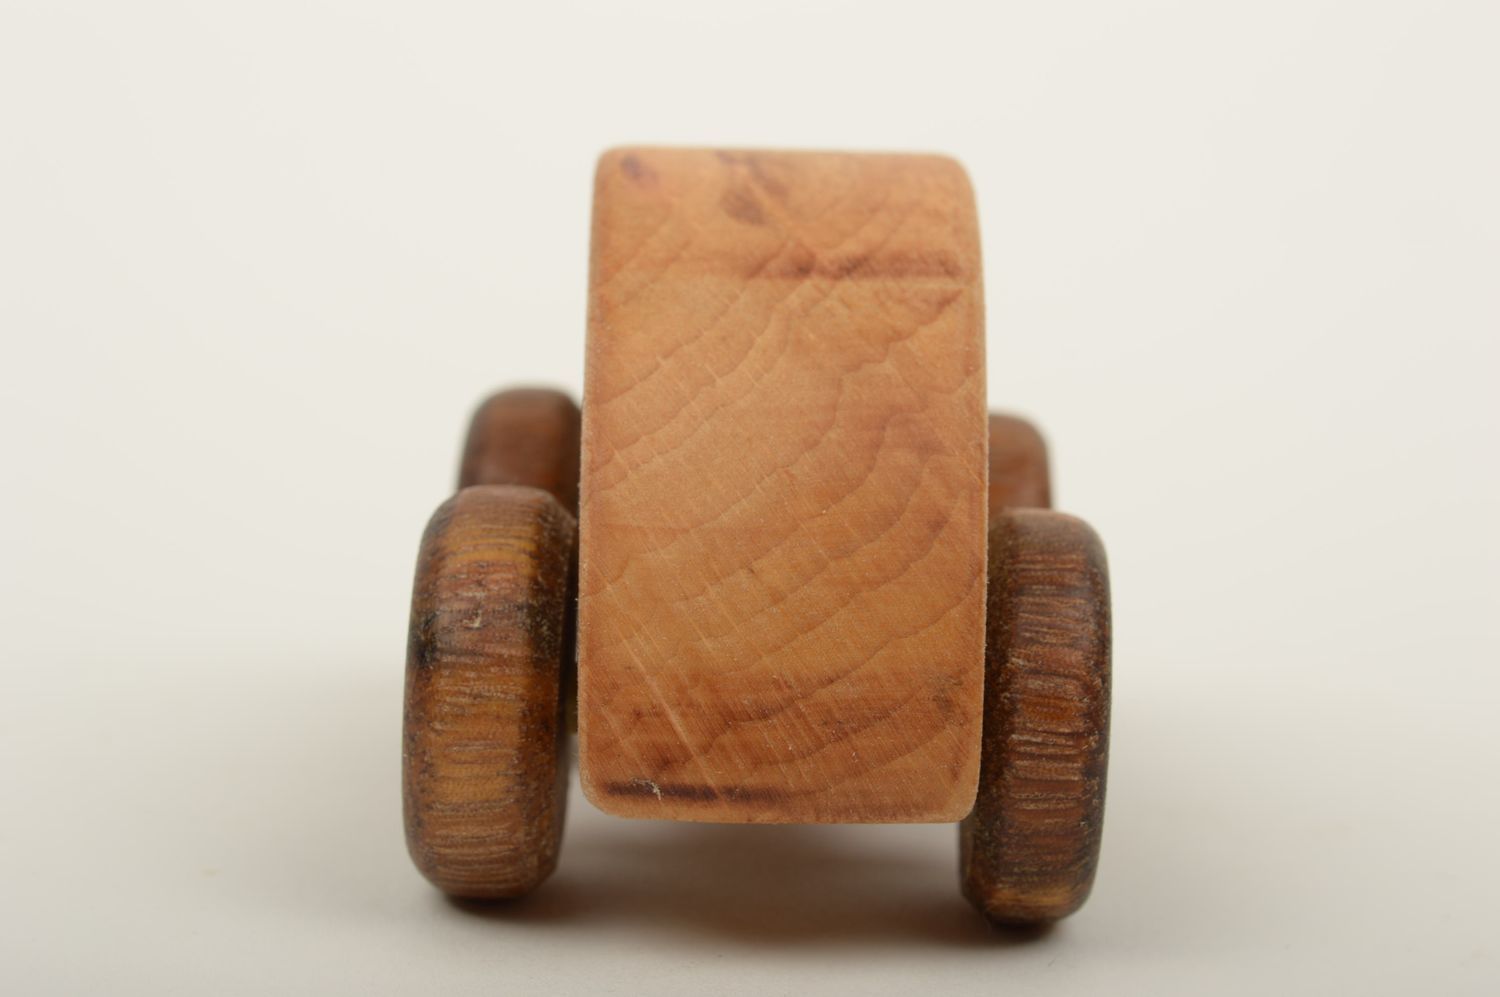 Spielzeug aus Holz handmade Spielzeug Auto Holzspielzeug Öko in Braun schön foto 3